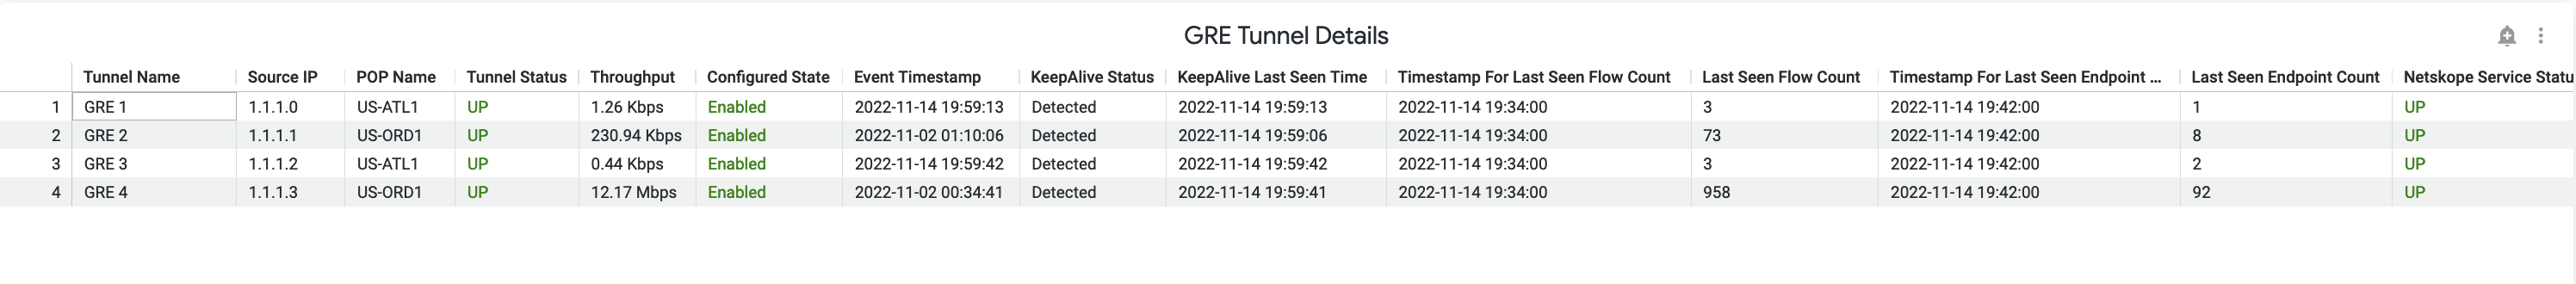 dem-gre-tunnel-details.png